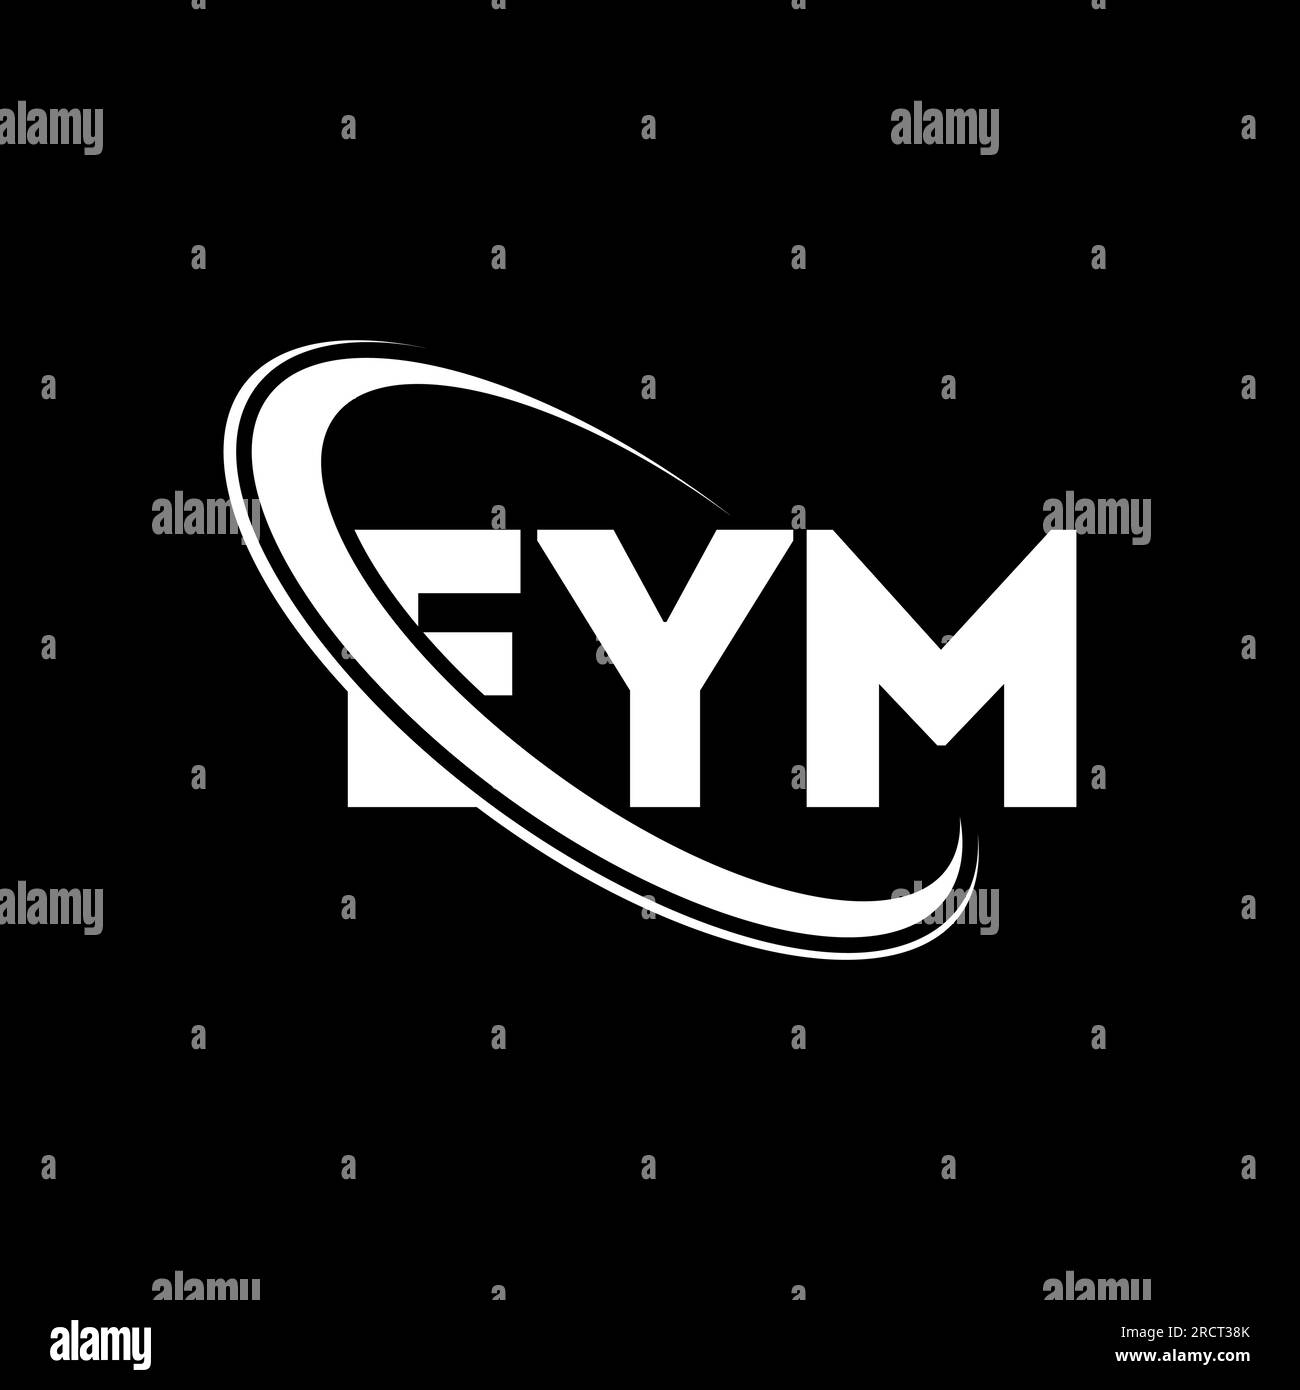 Logotipo de la empresa eym fotografías e imágenes de alta resolución ...